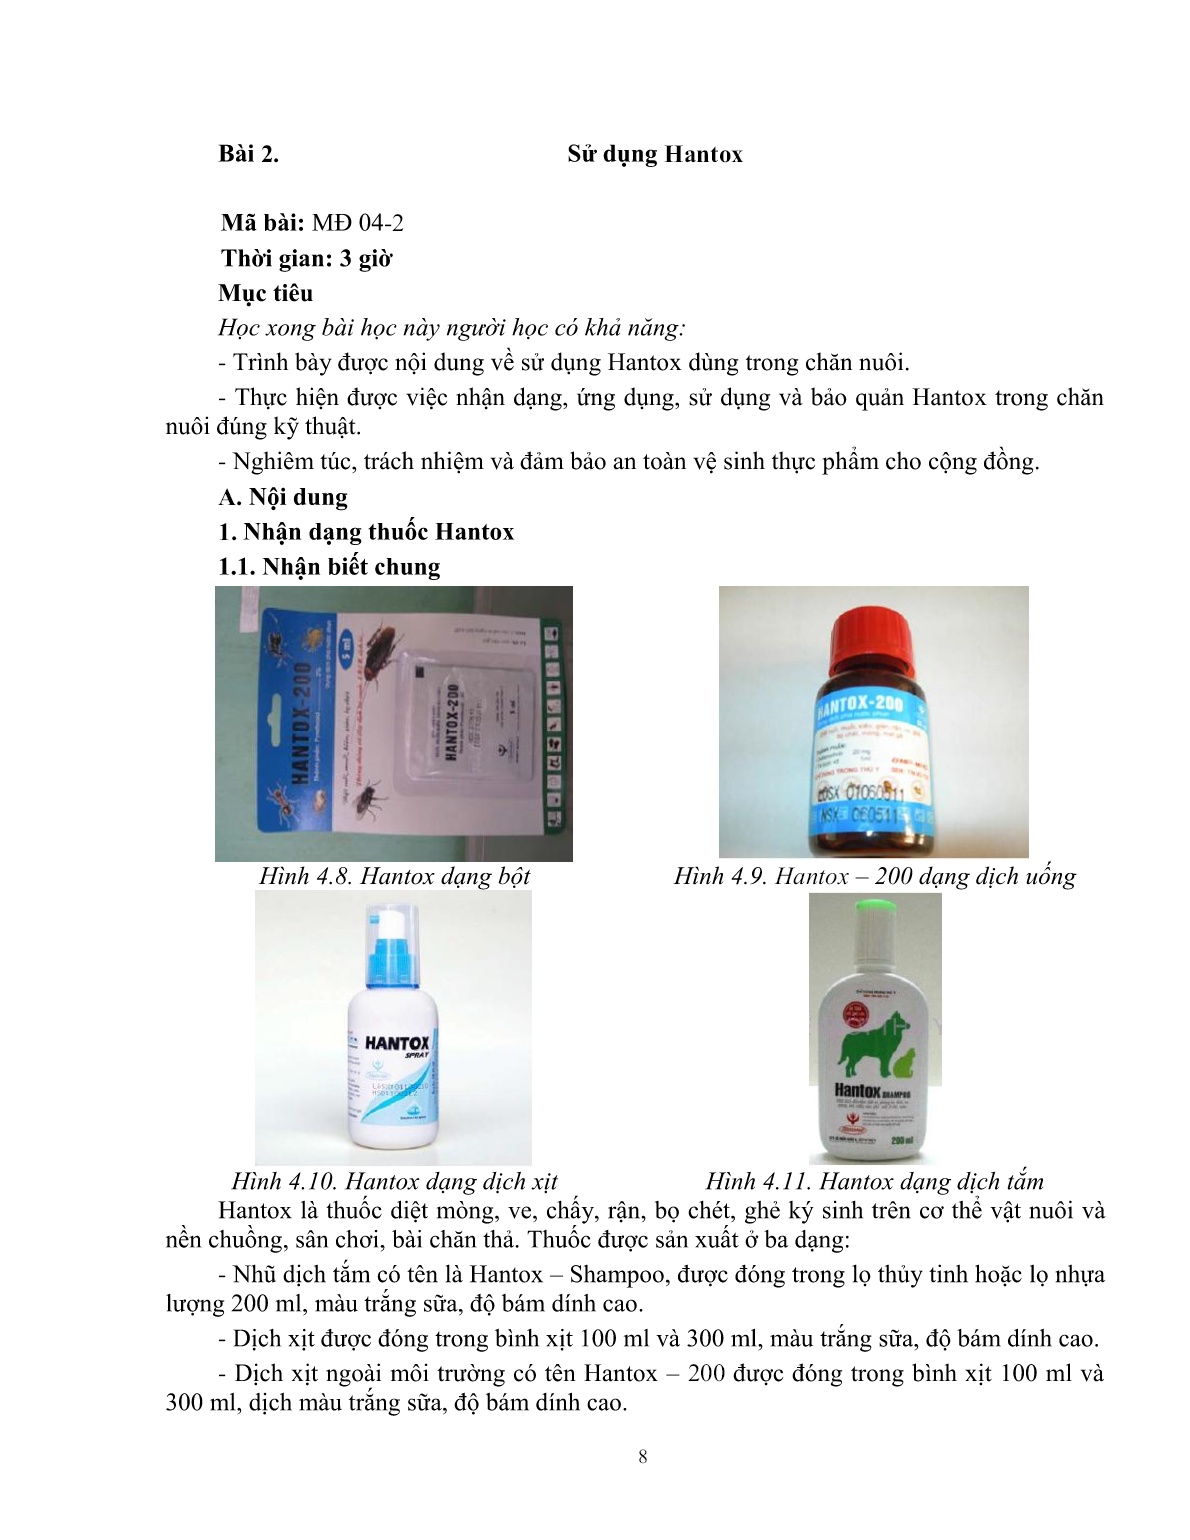 Giáo trình mô đun Xác định thuốc ký sinh trùng (Trình độ: Đào tạo dưới 3 tháng) trang 9